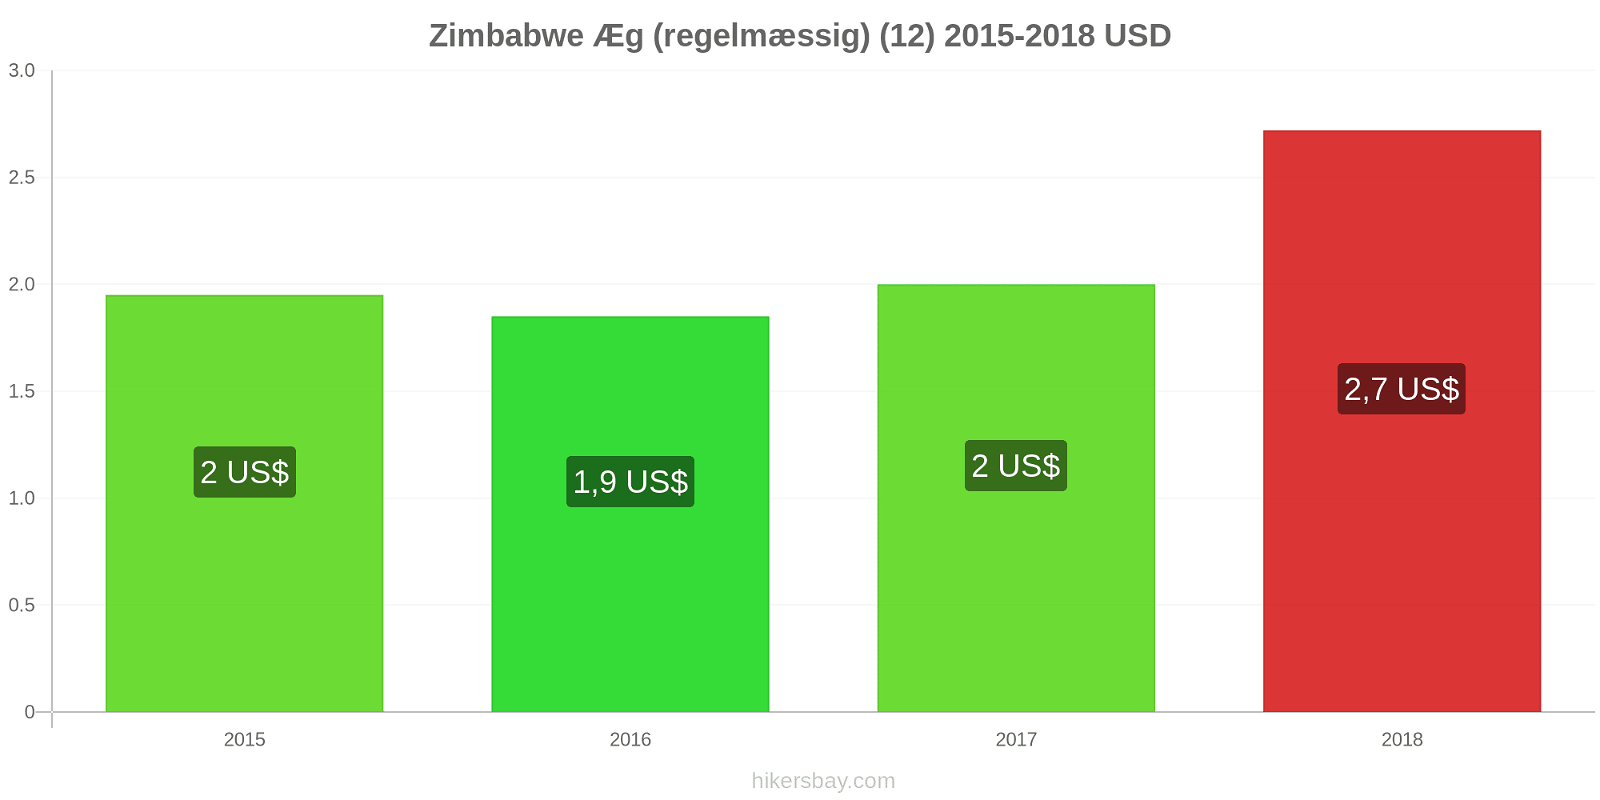 Zimbabwe prisændringer Æg (almindelige) (12) hikersbay.com